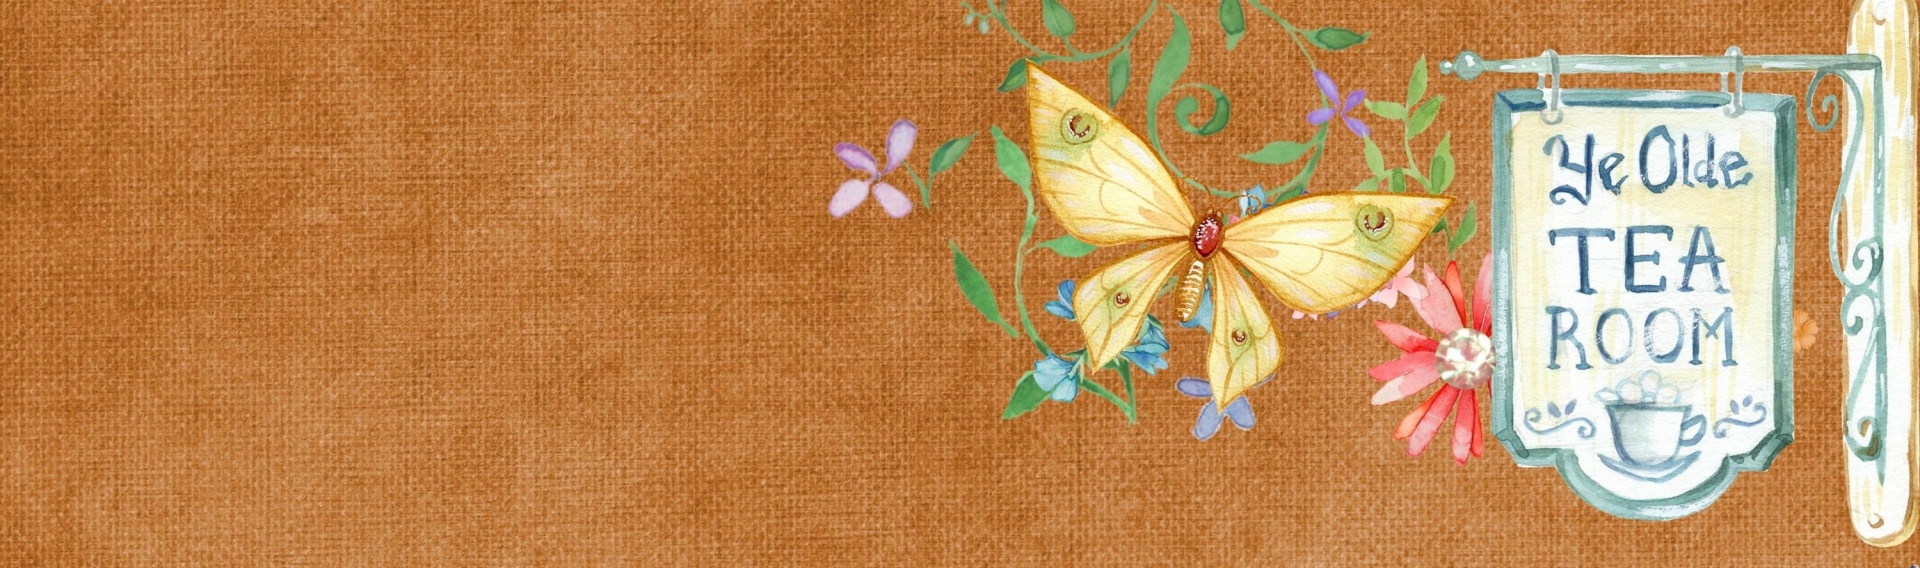 Bandera del Web de la mariposa romántica